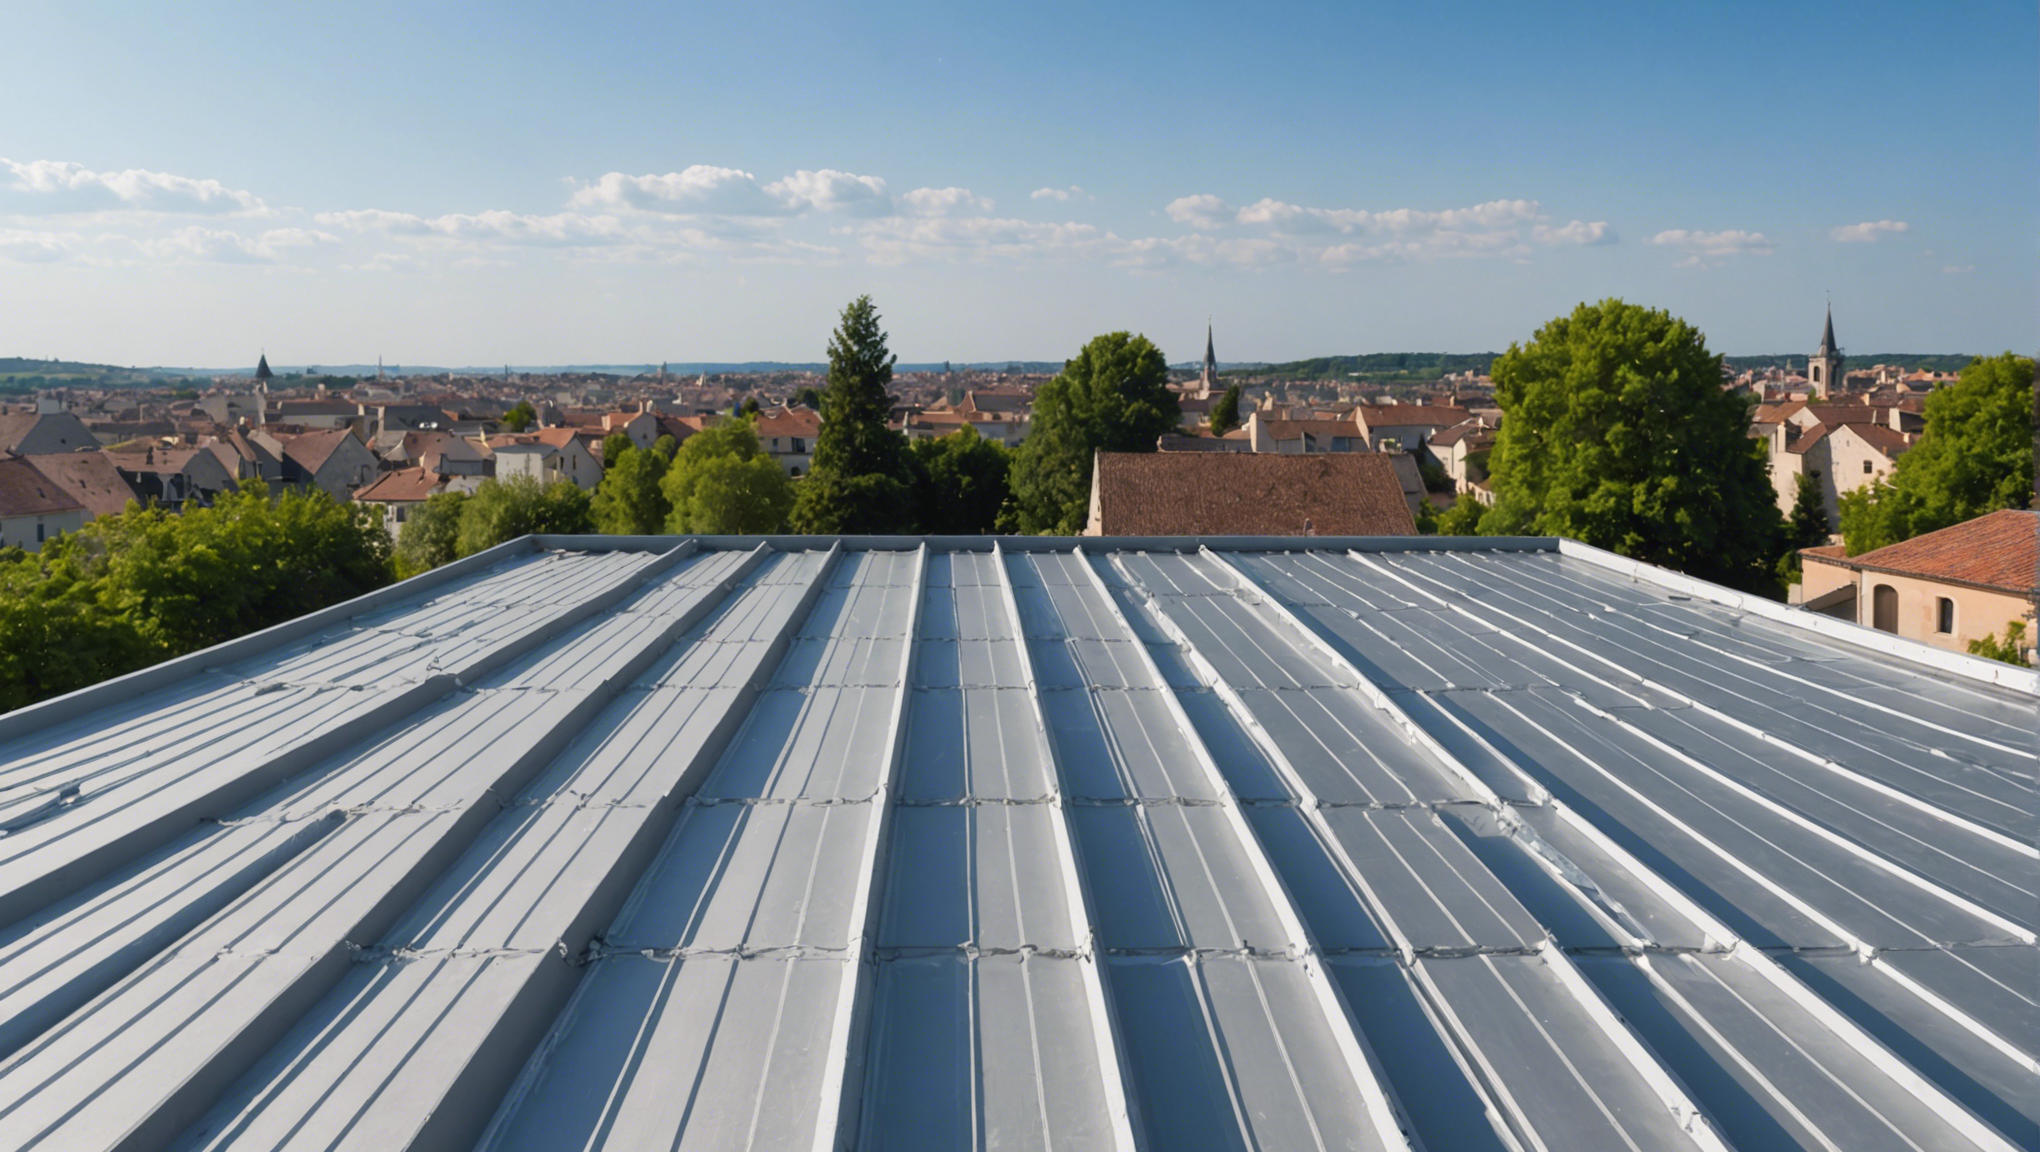 découvrez comment améliorer l'isolation de votre toiture en utilisant les solutions armacell en france. des conseils pratiques et des informations utiles pour optimiser l'efficacité énergétique de votre bâtiment.